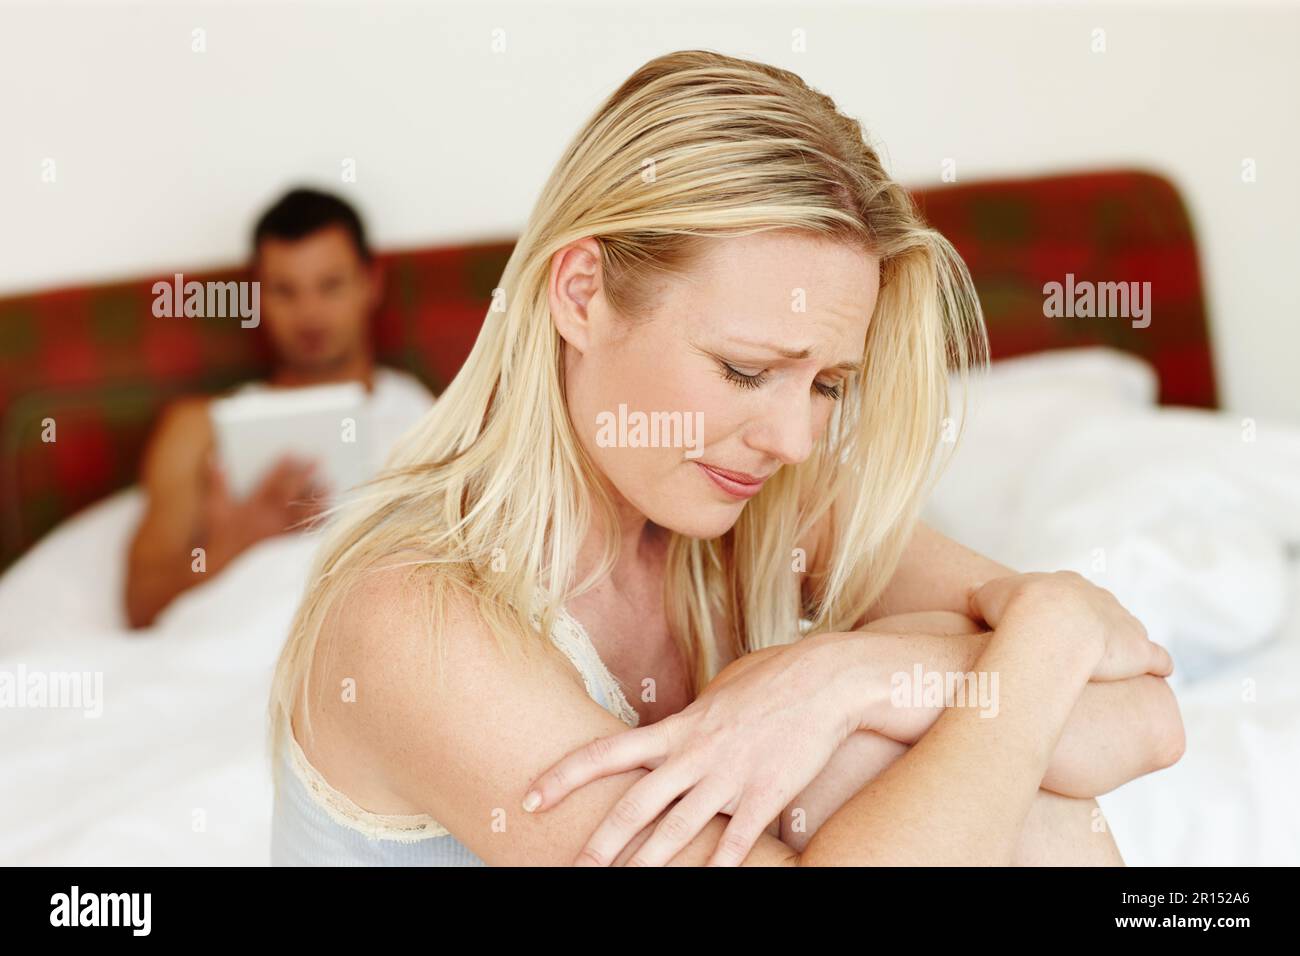 Die Risse zeigen sich in unserer Beziehung. Eine aufgebrachte Frau, die auf dem Rand ihres Bettes sitzt, während ihr Mann im Hintergrund liegt. Stockfoto